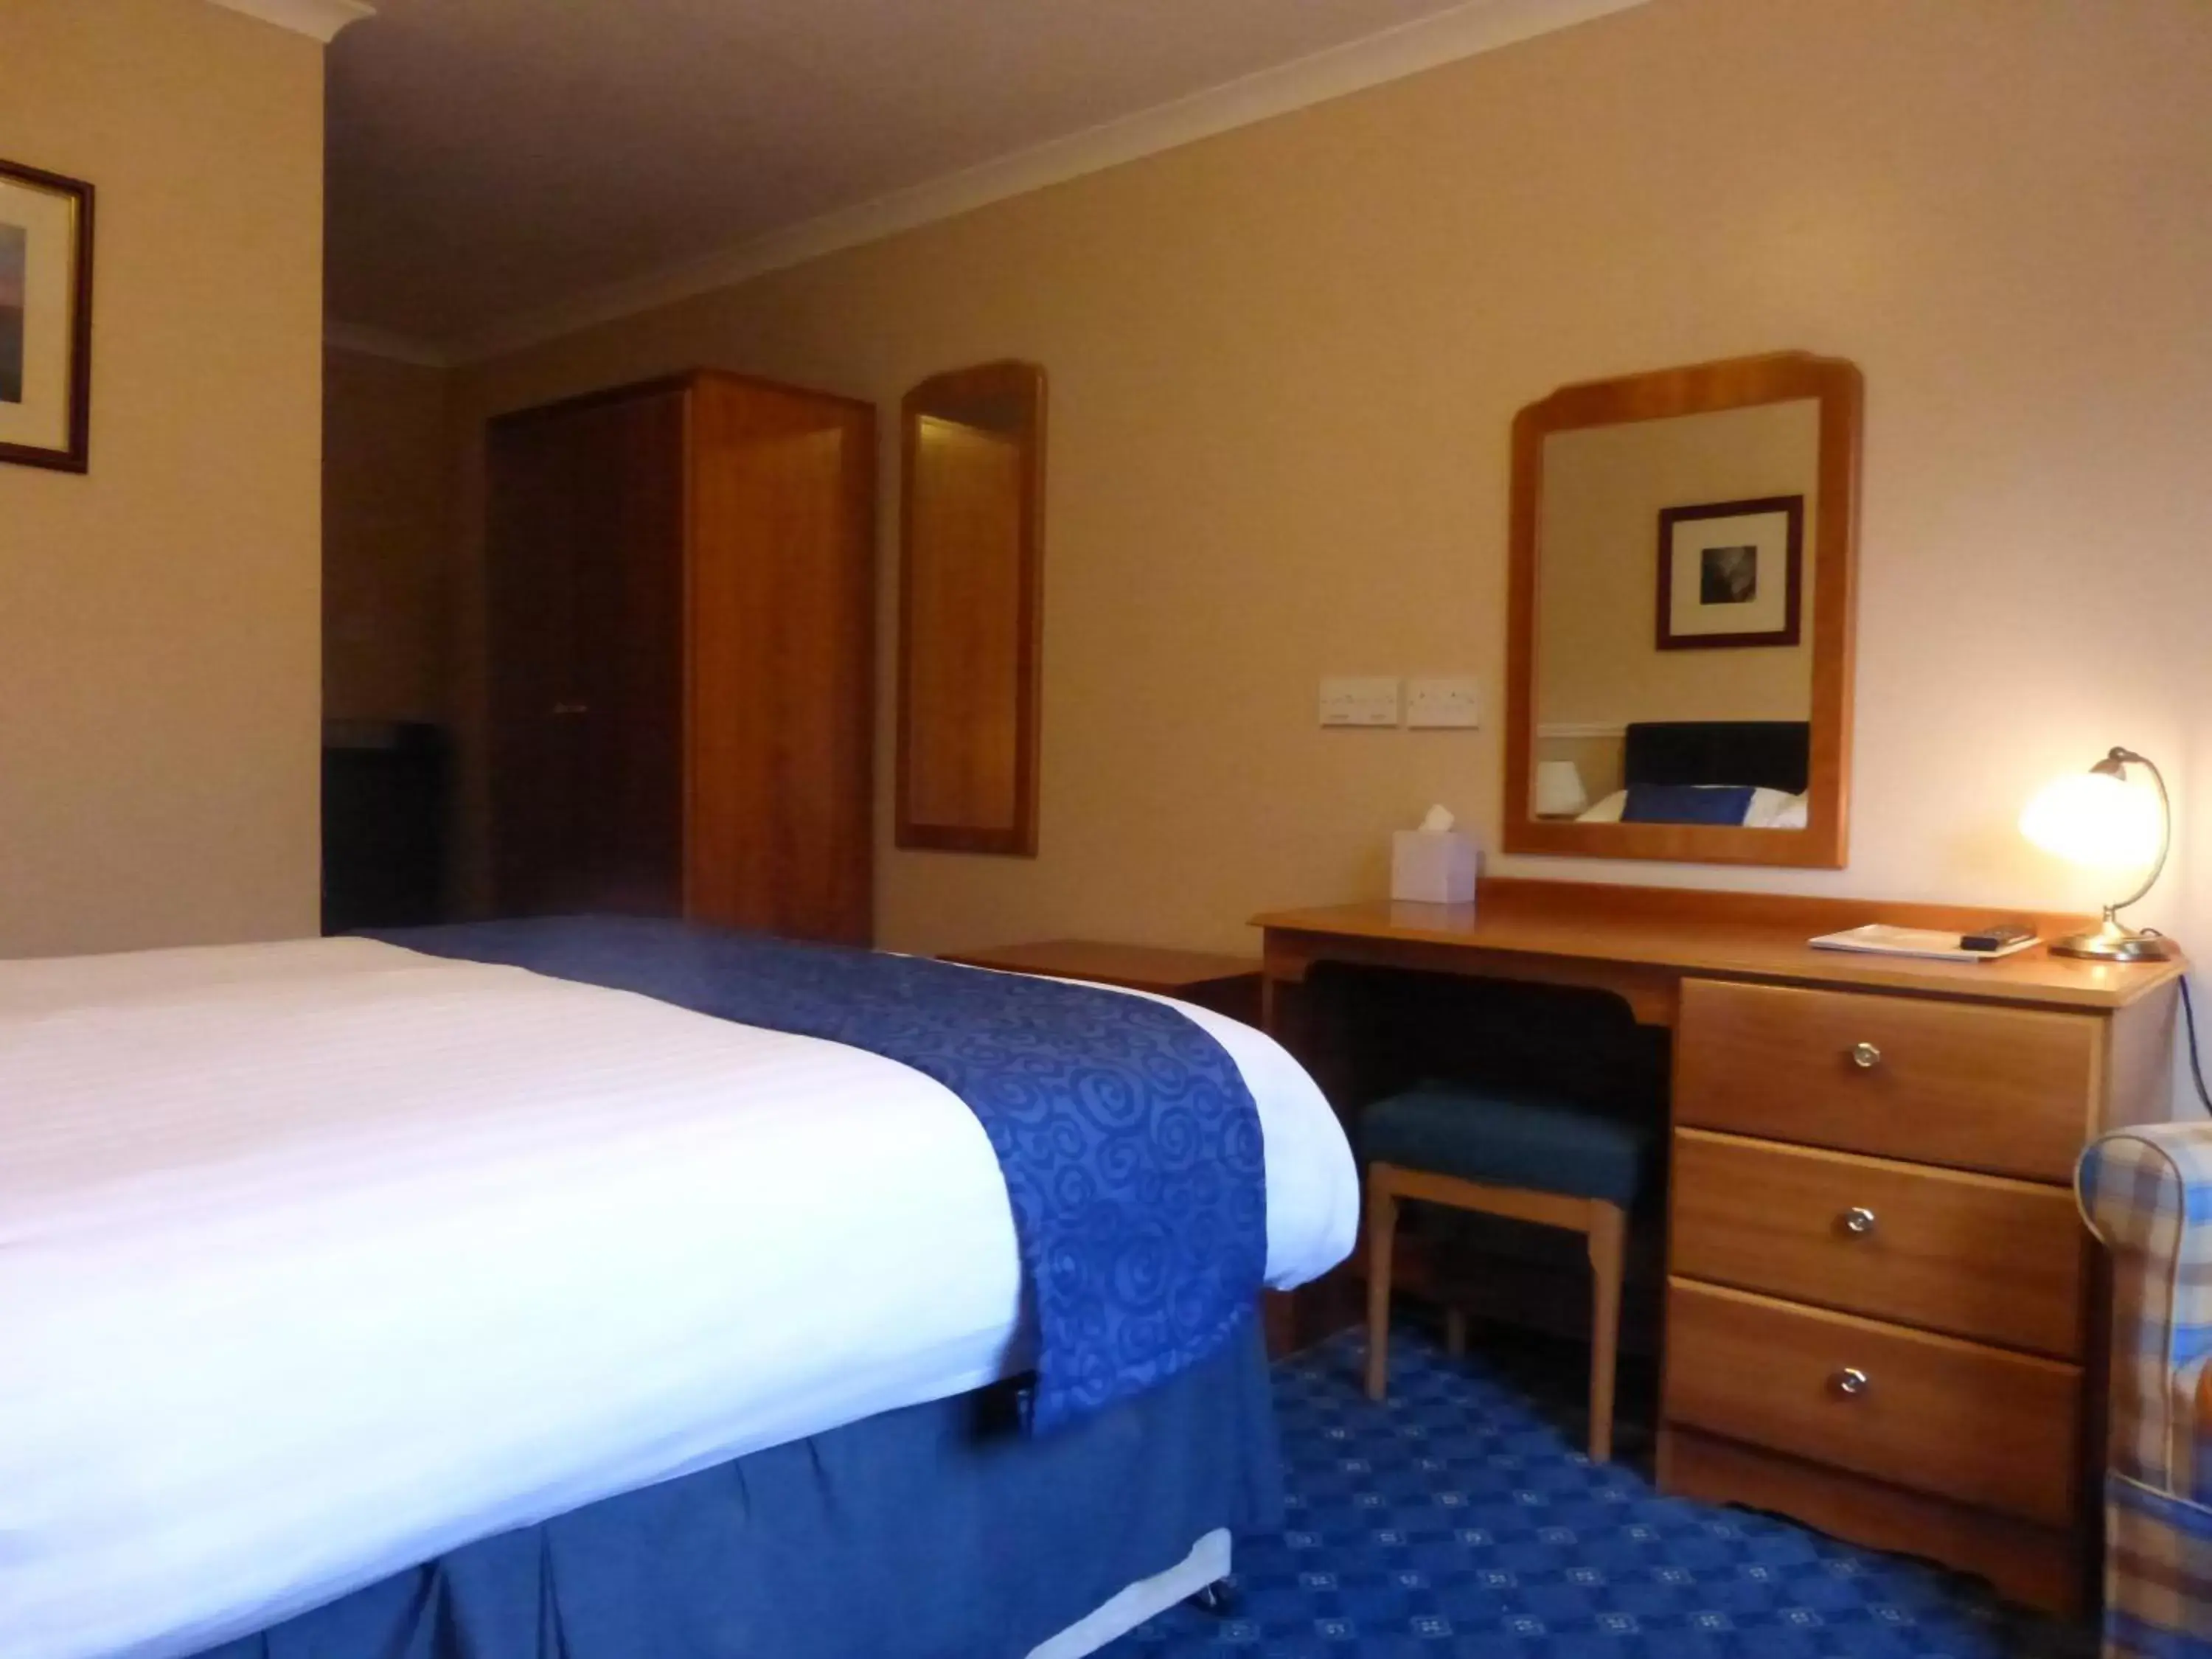 Bedroom, Bed in Norseman Hotel